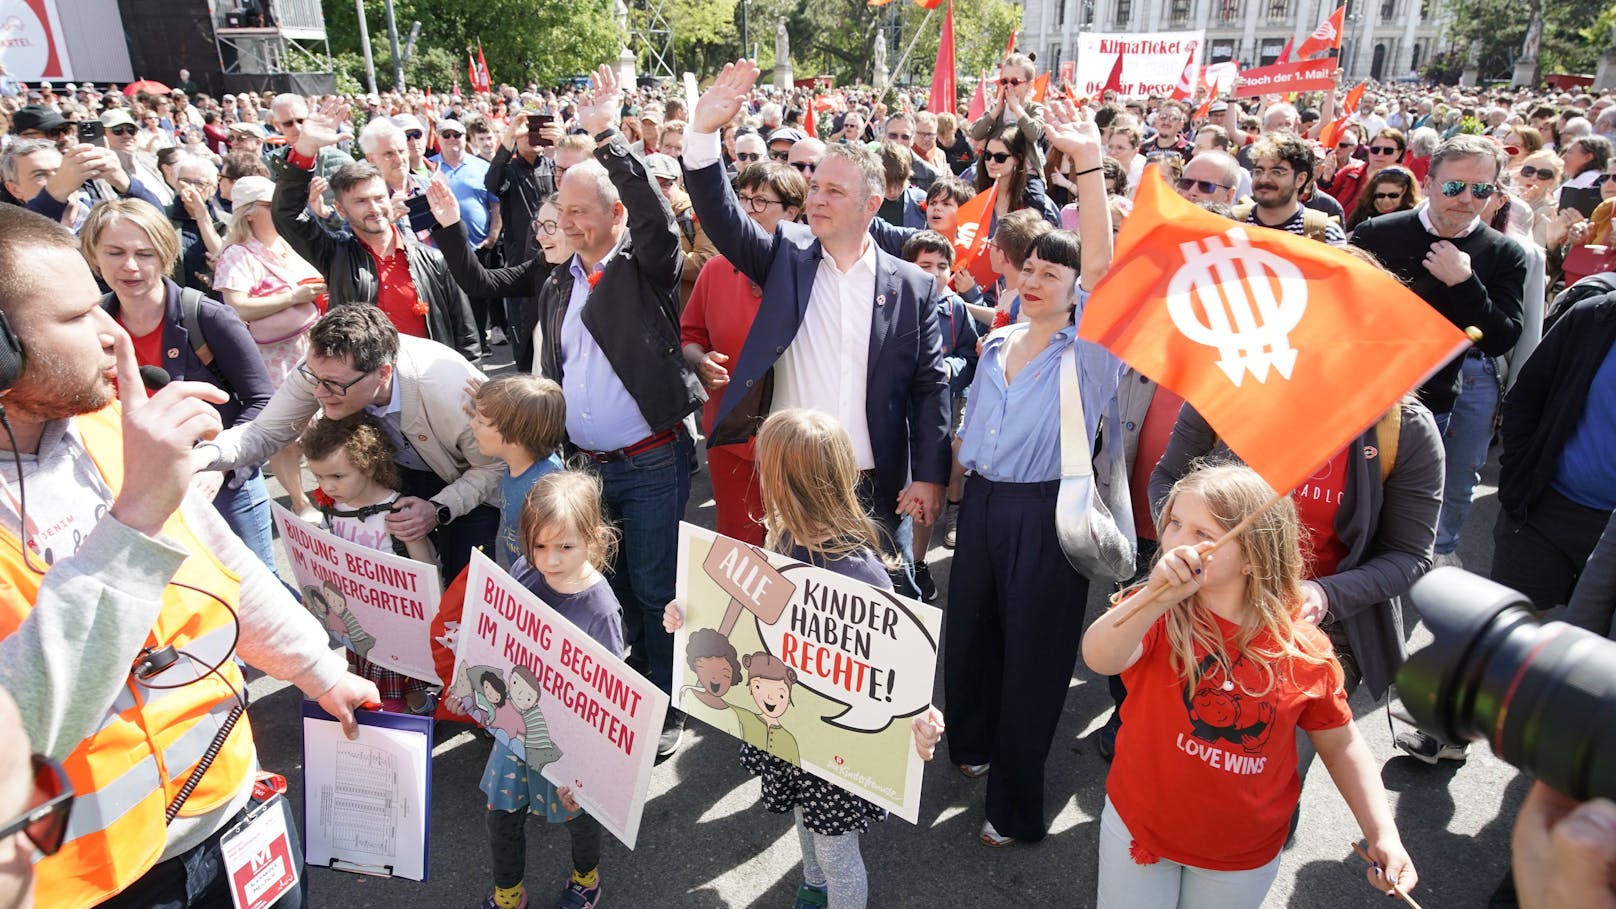 Die politischen Mai-Feiern standen am 1. Mai ganz im Zeichen der Europawahl. So lautete etwa das Motto der Kundgebung der SPÖ "Wir in Wien stehen für ein faires Europa". "Heute" hat die Bilder!